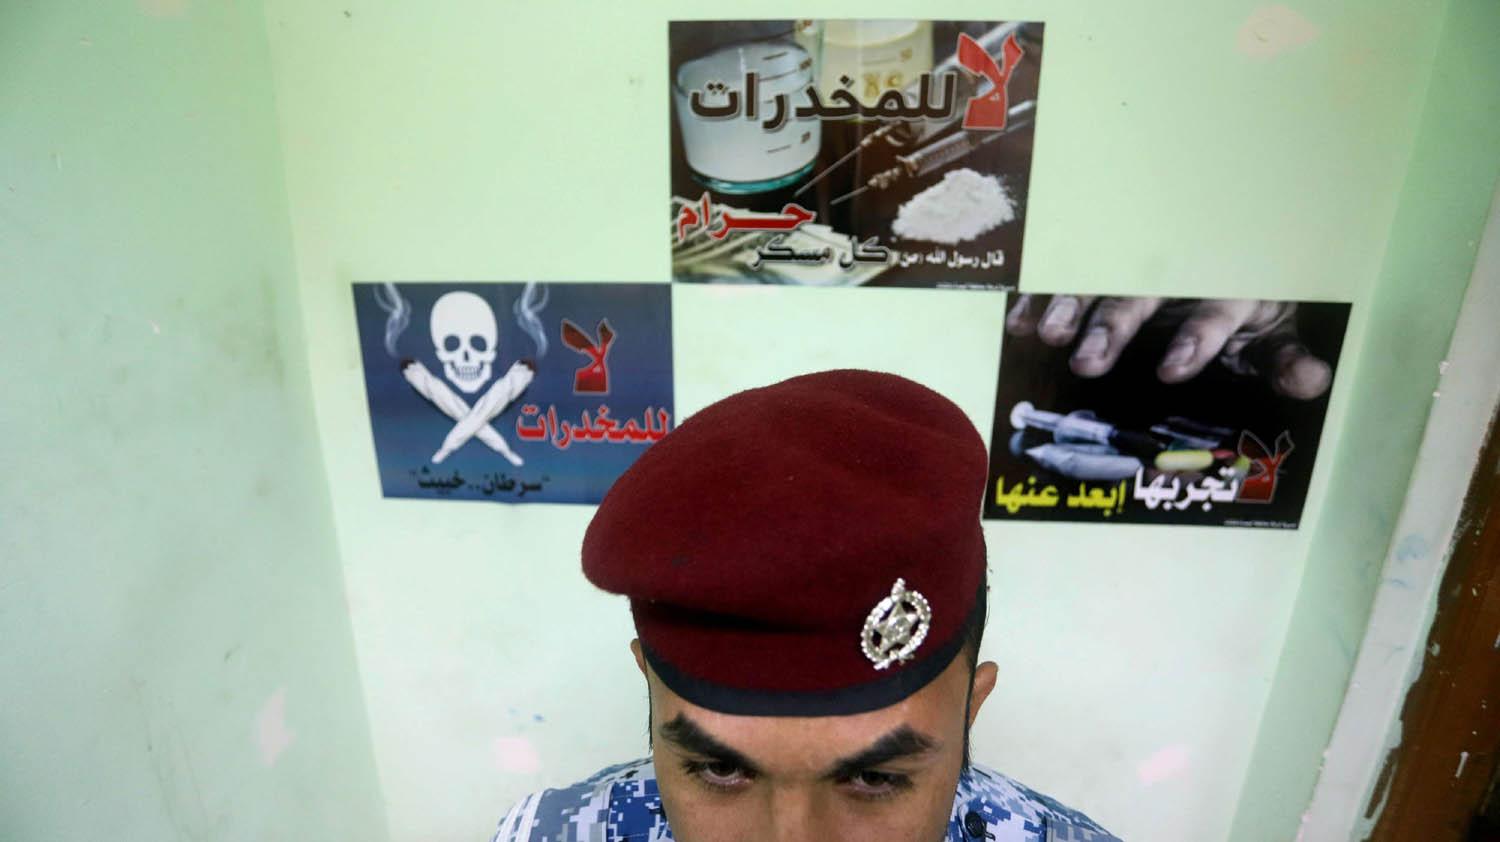 شرطي عراقي مع ملصقات تحض على عدم تعاطي المخدرات